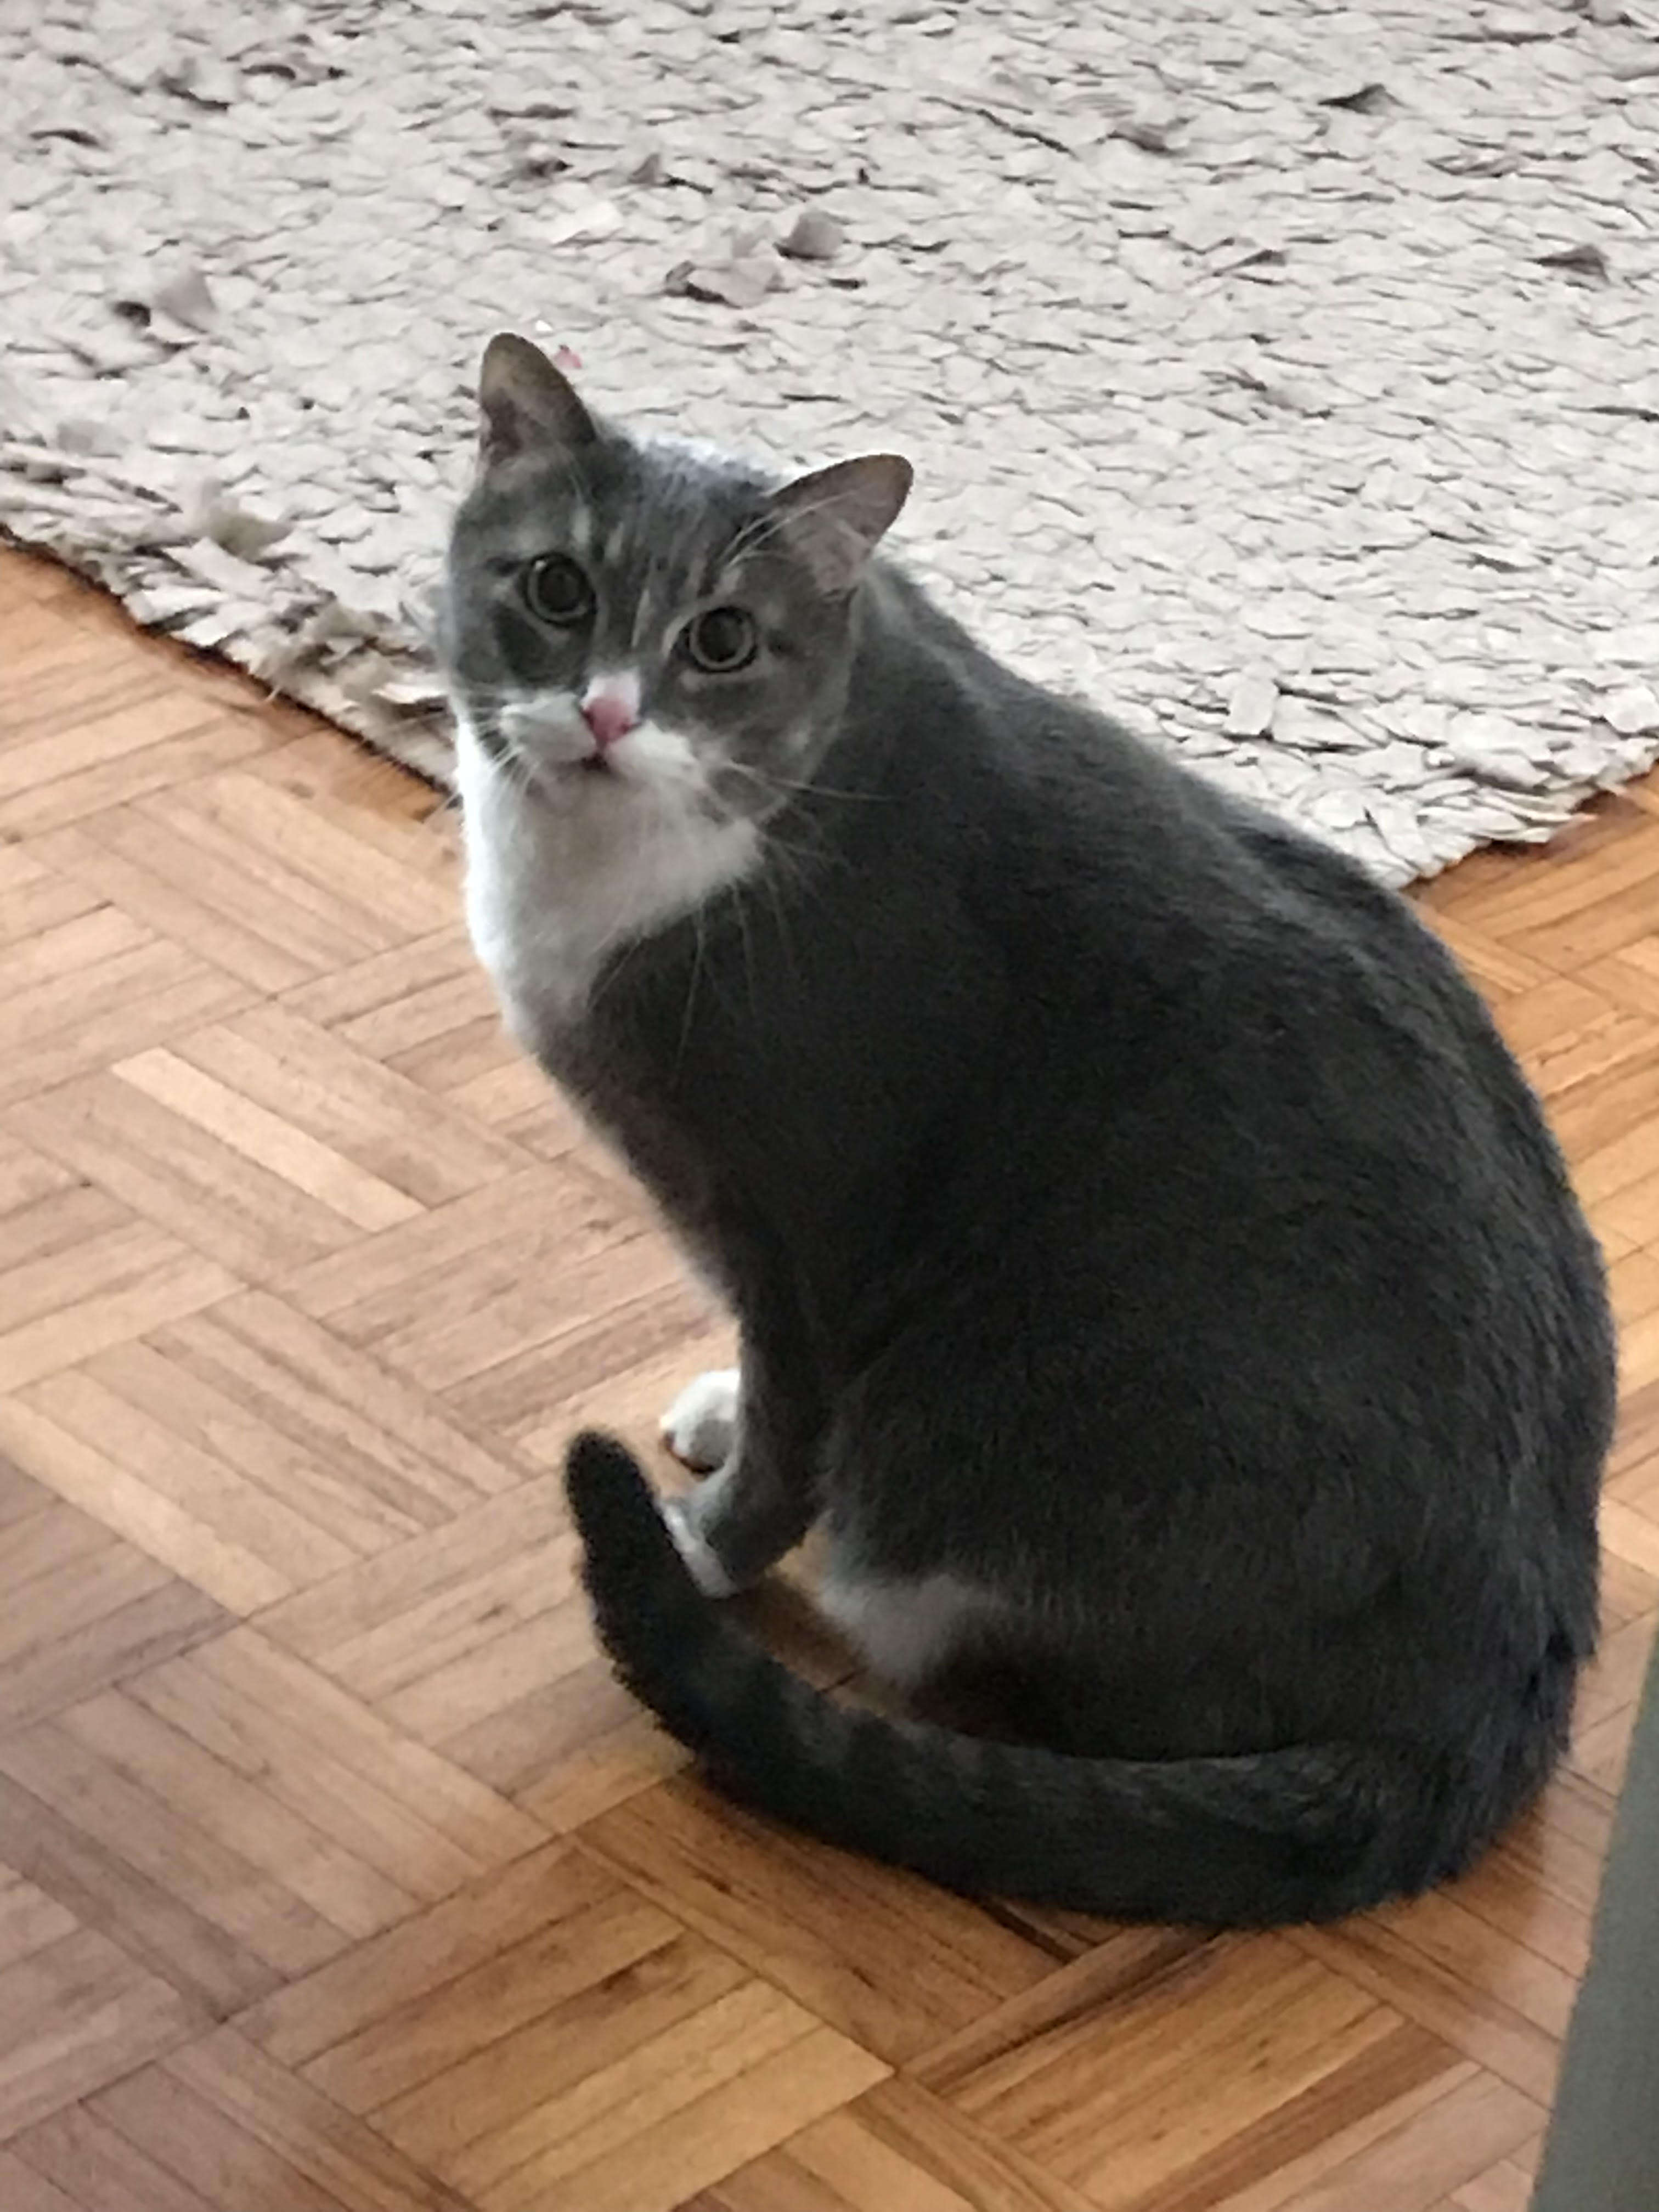 Gray cat looking at camera